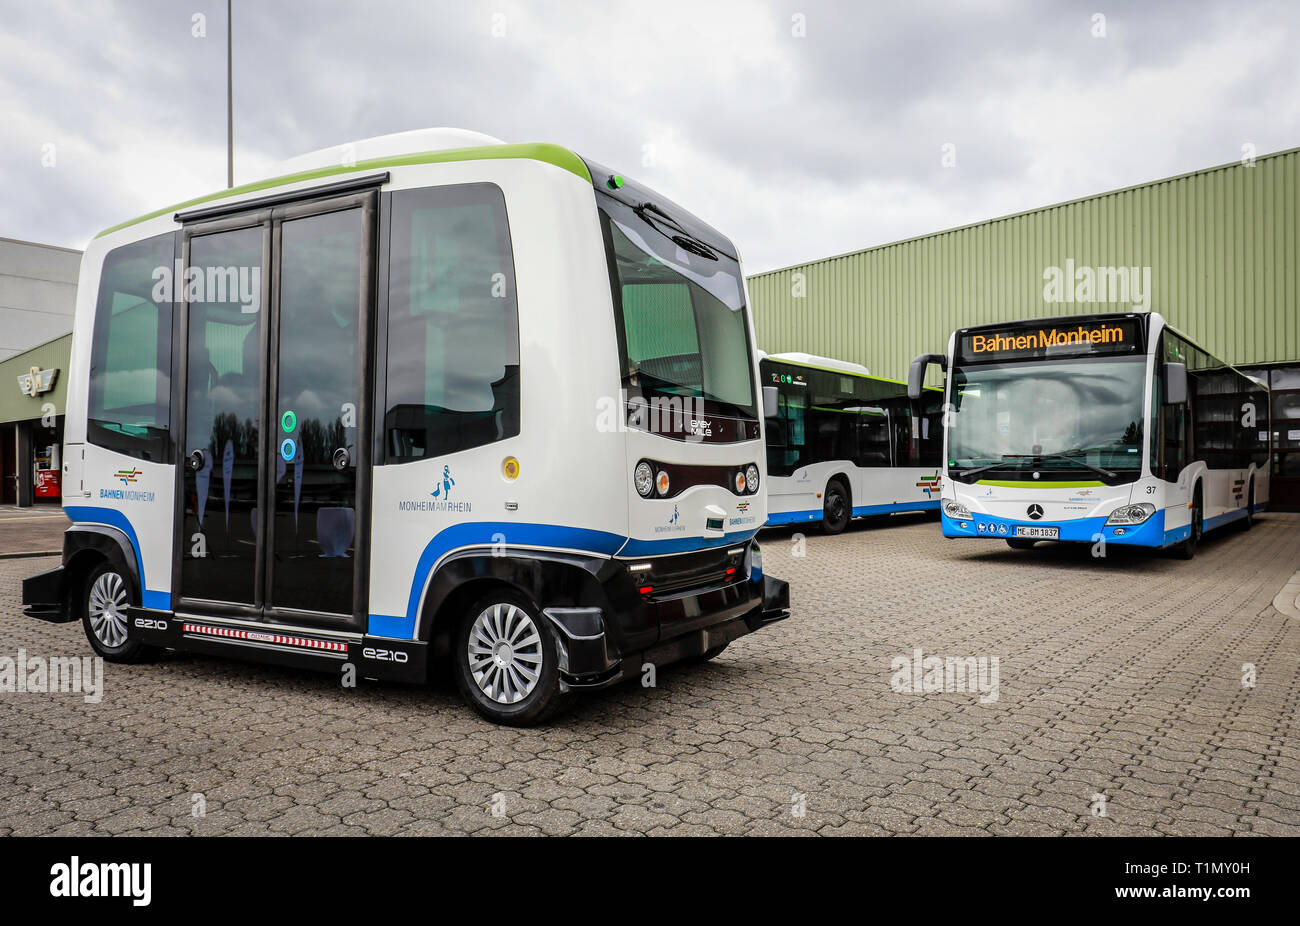 Monheim, Rhénanie du Nord-Westphalie, Allemagne - Présentation de l'autobus électrique autonome en service régulier, modèle EZ10 de la société Easymile, au Banque D'Images